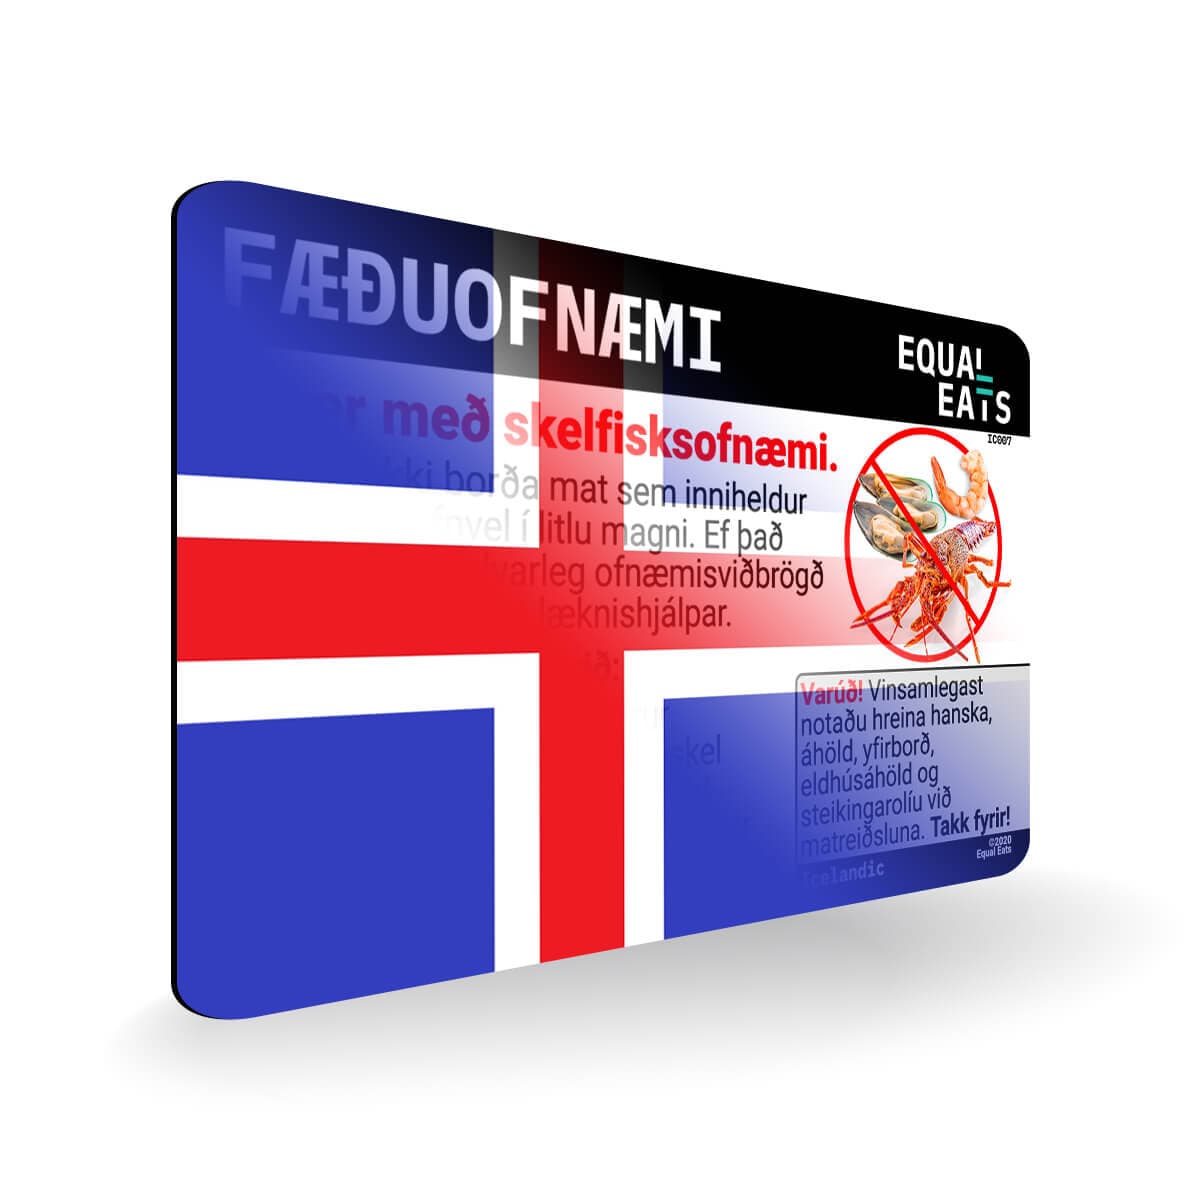 Shellfish Allergy in Icelandic. Shellfish Allergy Card for Iceland